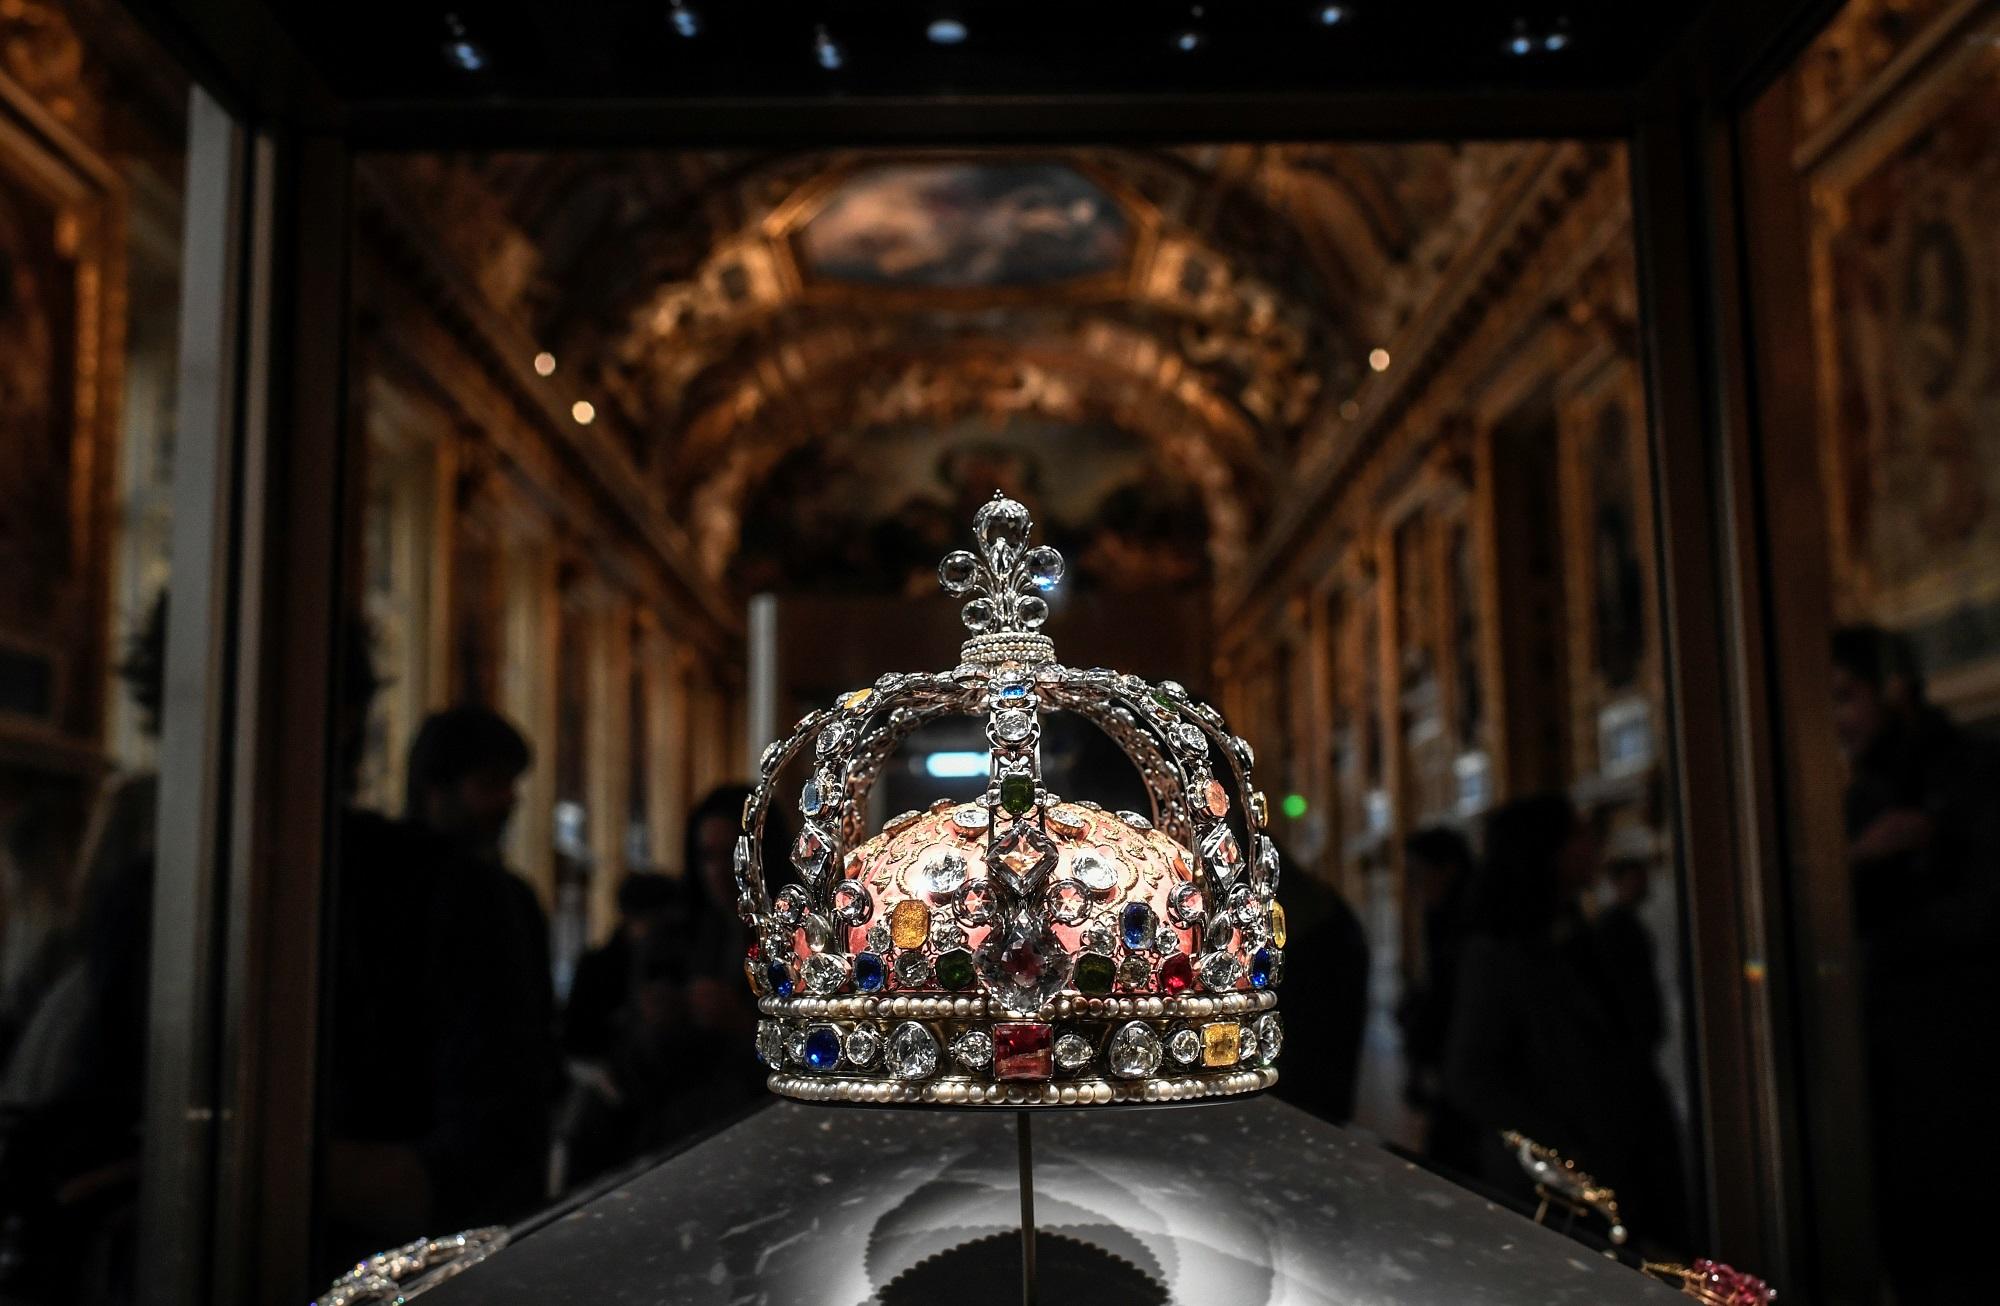 تاج الملك لويس الخامس عشر المعروض في متحف اللوفر في باريس.  14 كانون أول/ يناير 2020. ستيفان دي ساكوتين/ أ ف ب